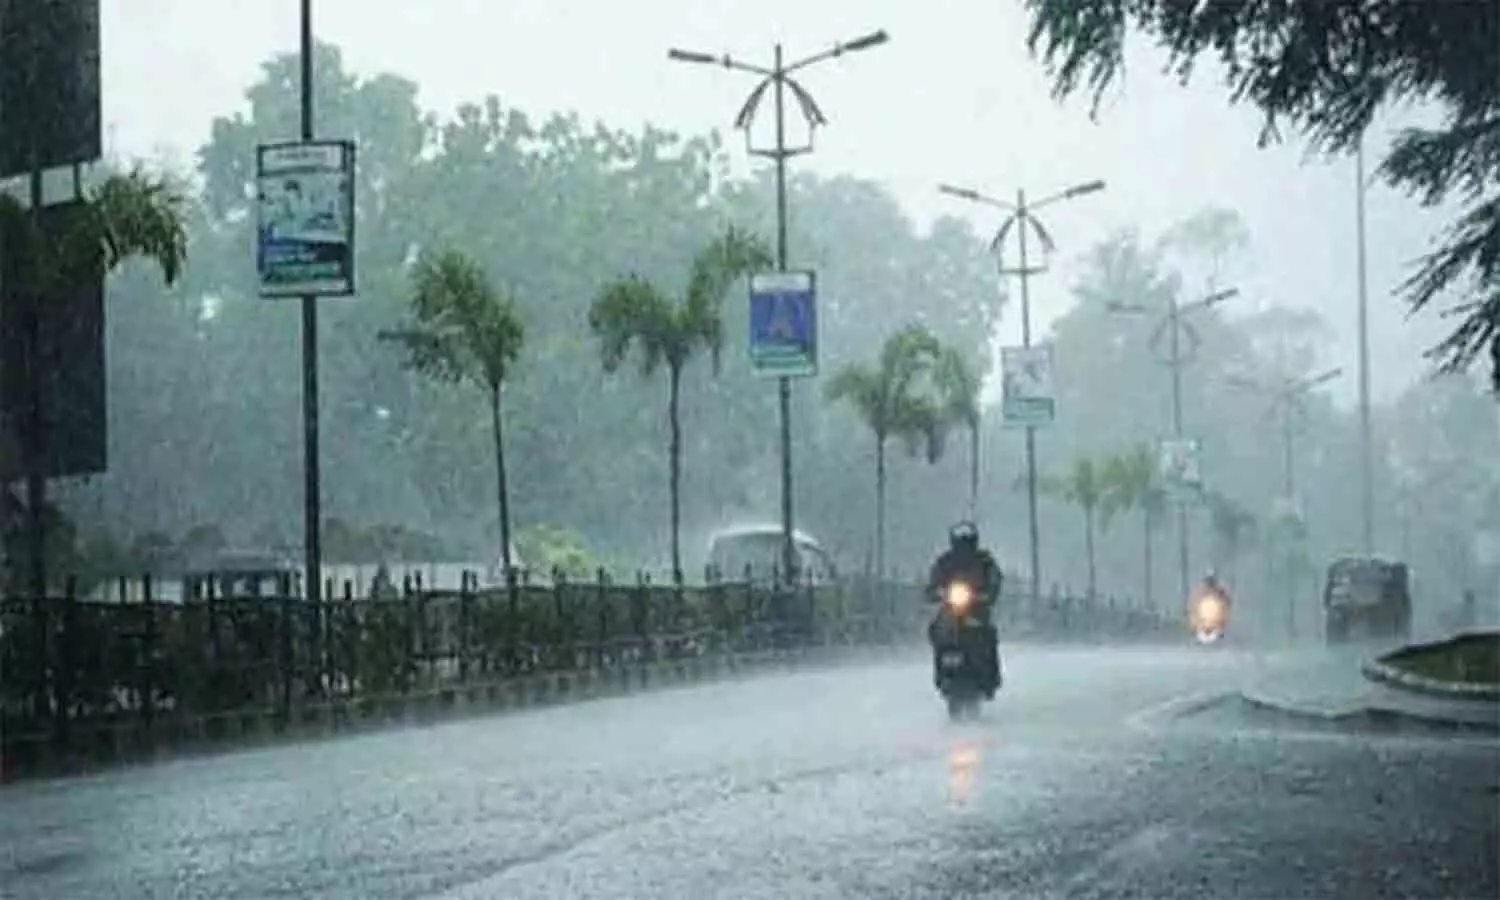 रीवा के साथ एमपी के इन जिलों में मौसम विभाग ने जारी किया अलर्ट, भारी बारिश की संभावना